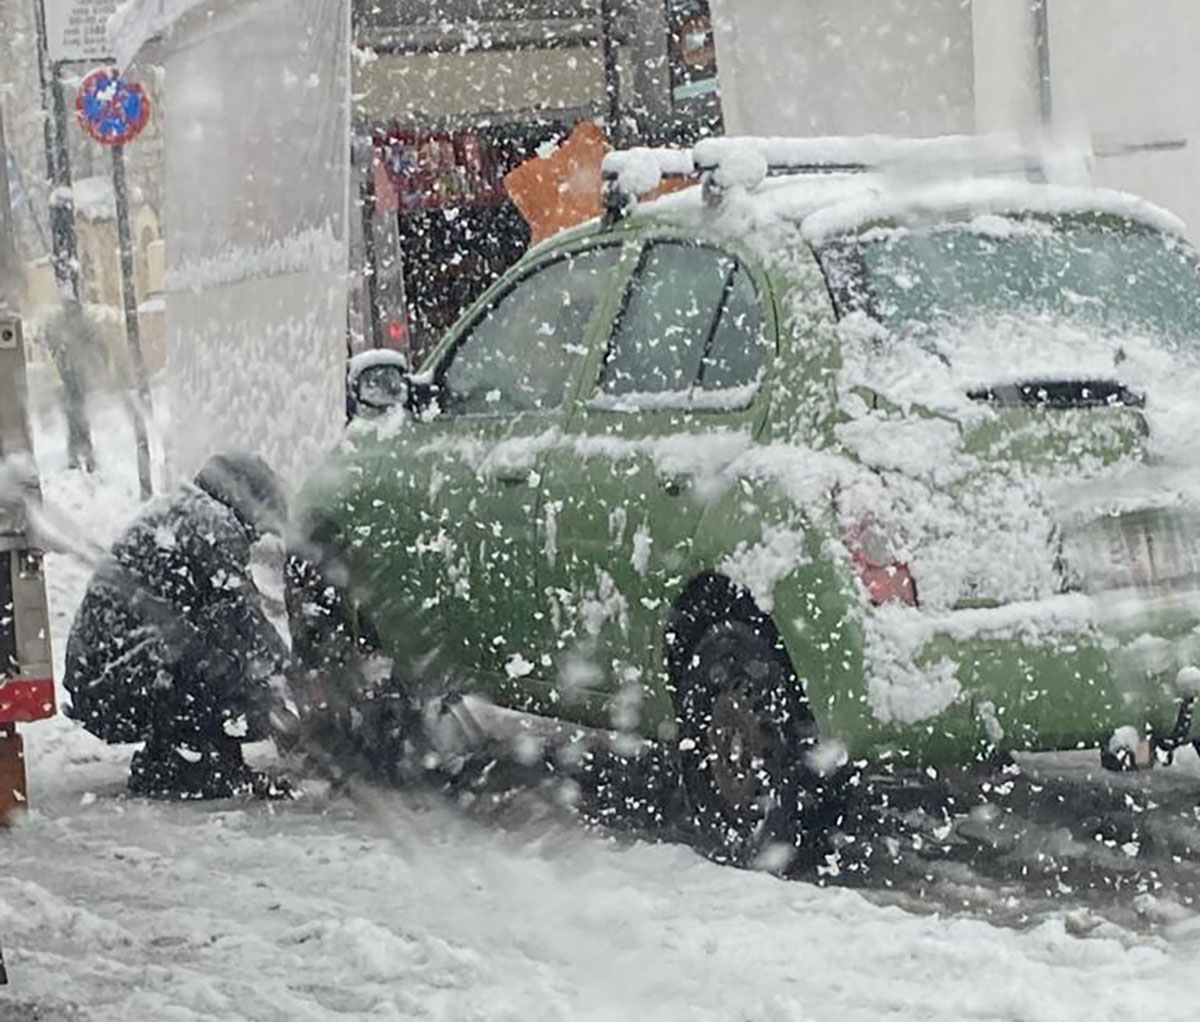 Έκλεισε η Κατεχάκη λόγω του χιονιού - Δύσκολη η κατάσταση στους δρόμους (ΣΥΝΕΧΗΣ ΝΗΜΕΡΩΣΗ)